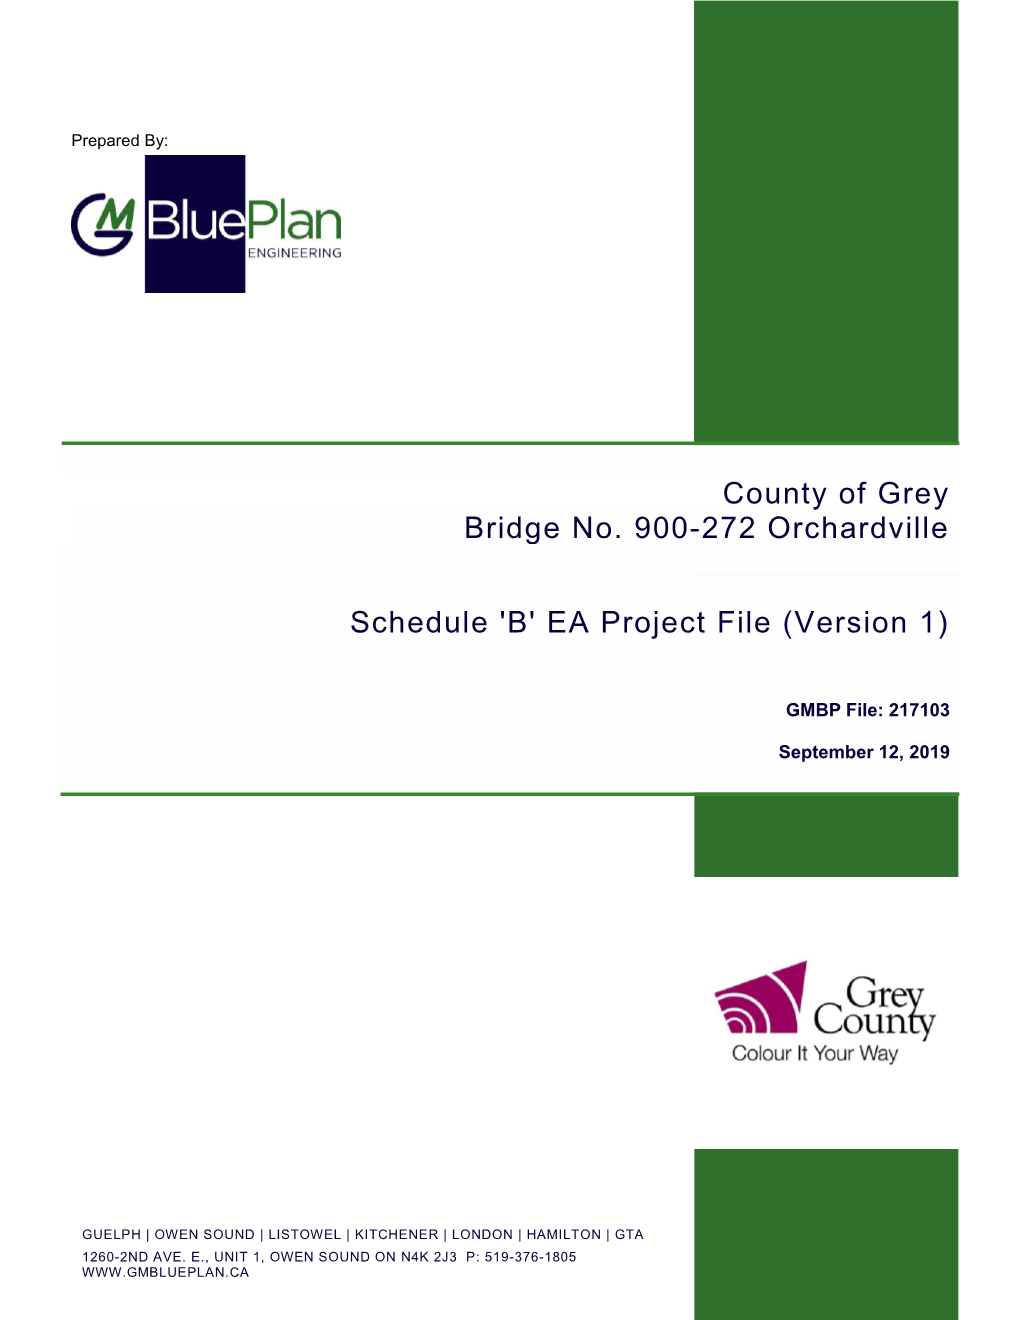 County of Grey Bridge No. 900-272 Orchardville Schedule 'B' EA